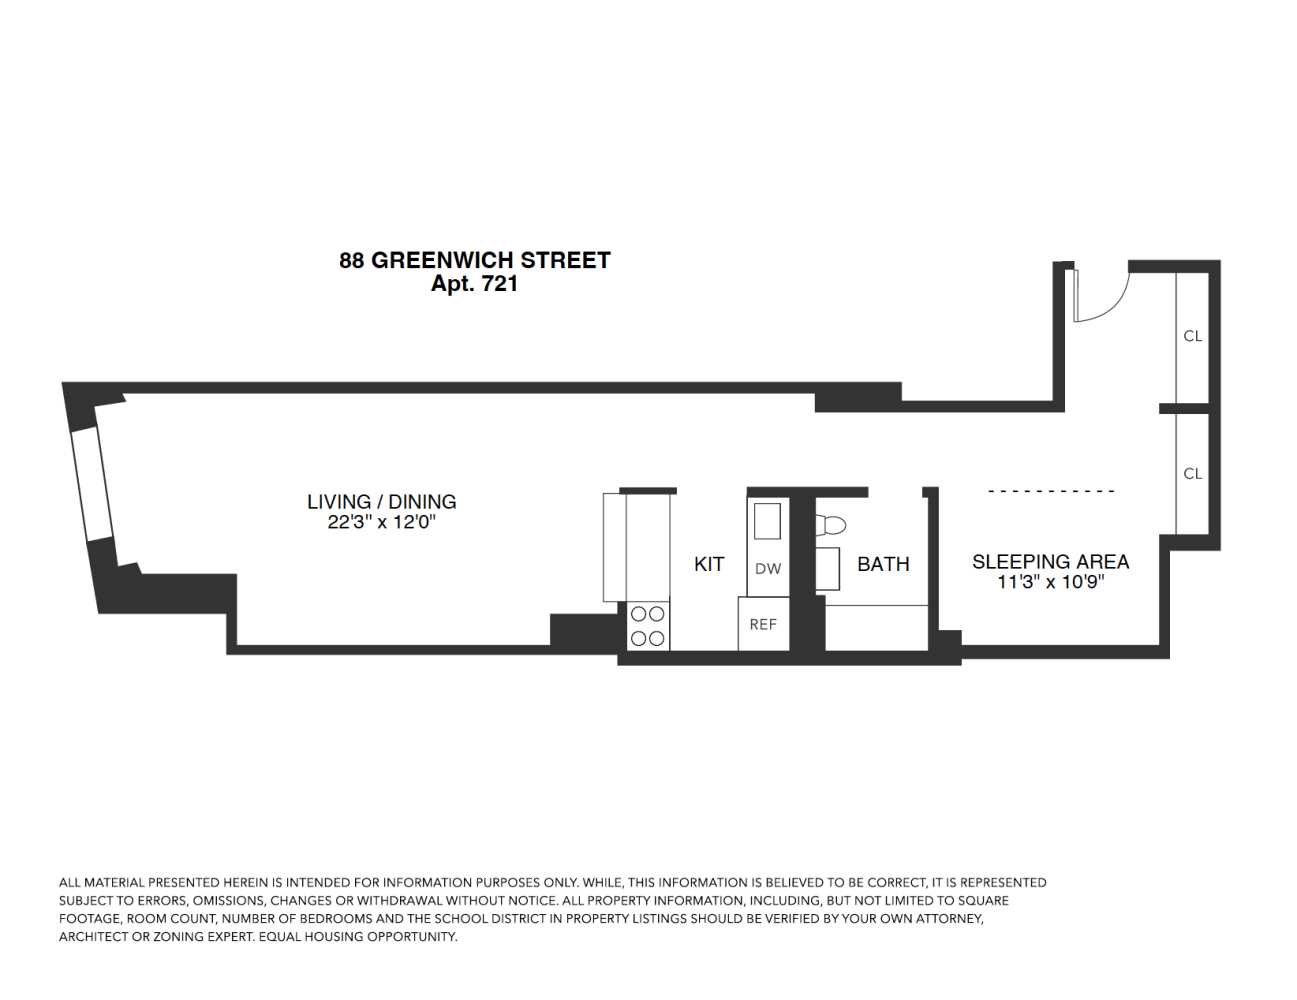 Floorplan for 88 Greenwich Street, 721